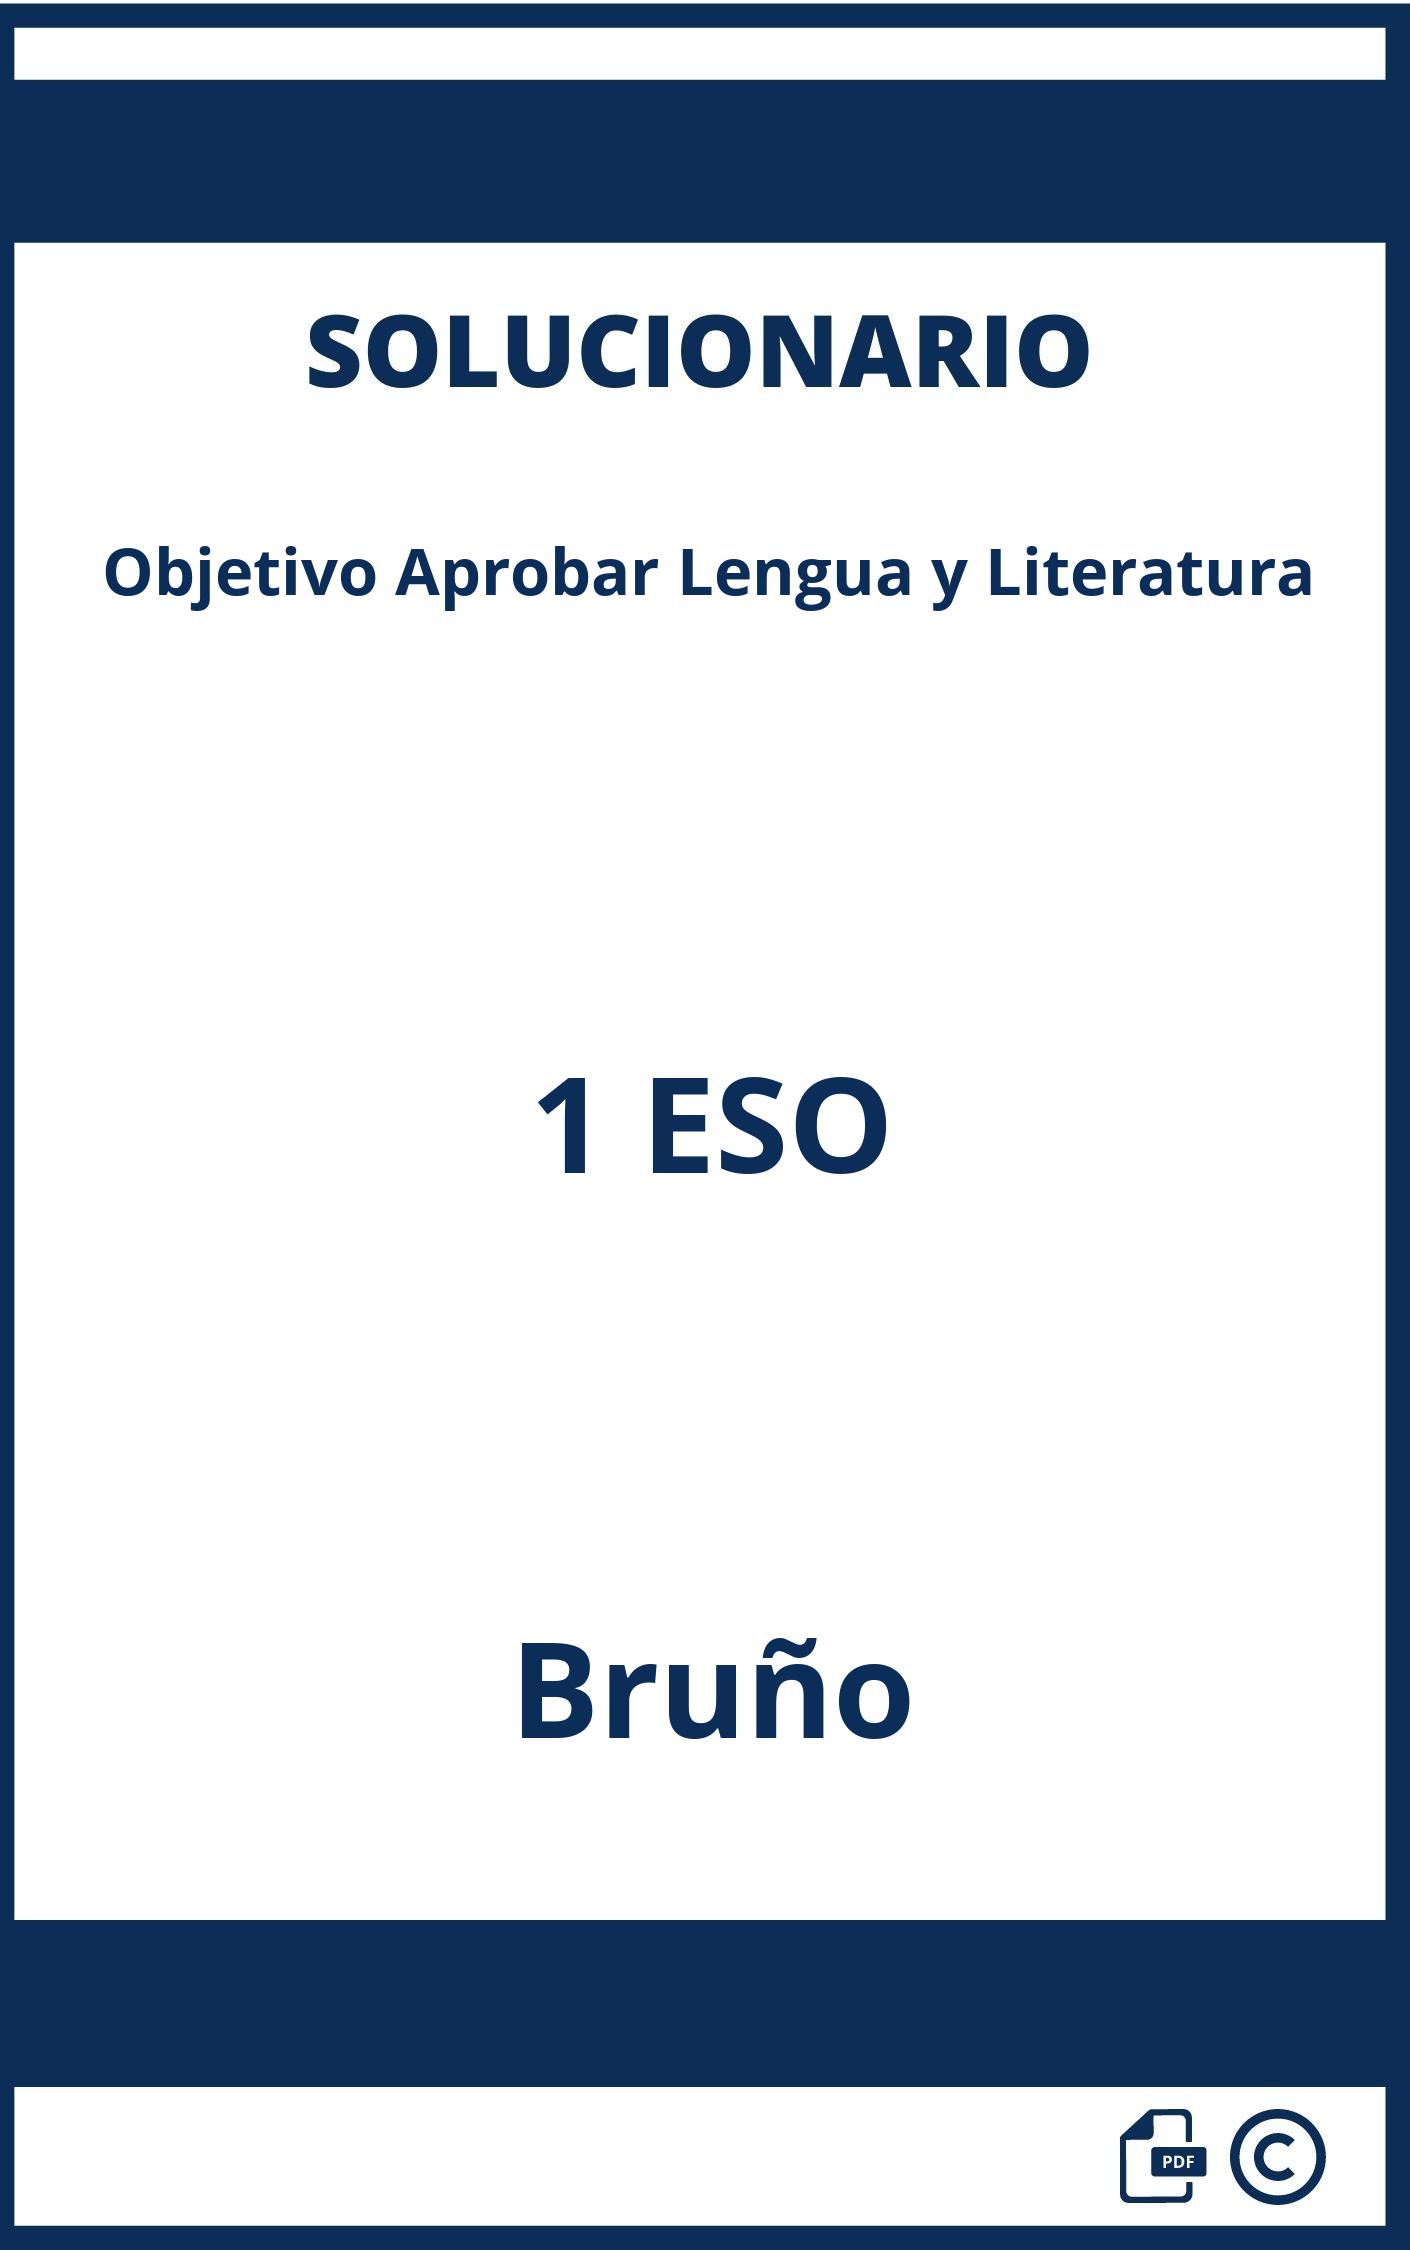 Solucionario Objetivo Aprobar Lengua y Literatura 1 ESO Bruño